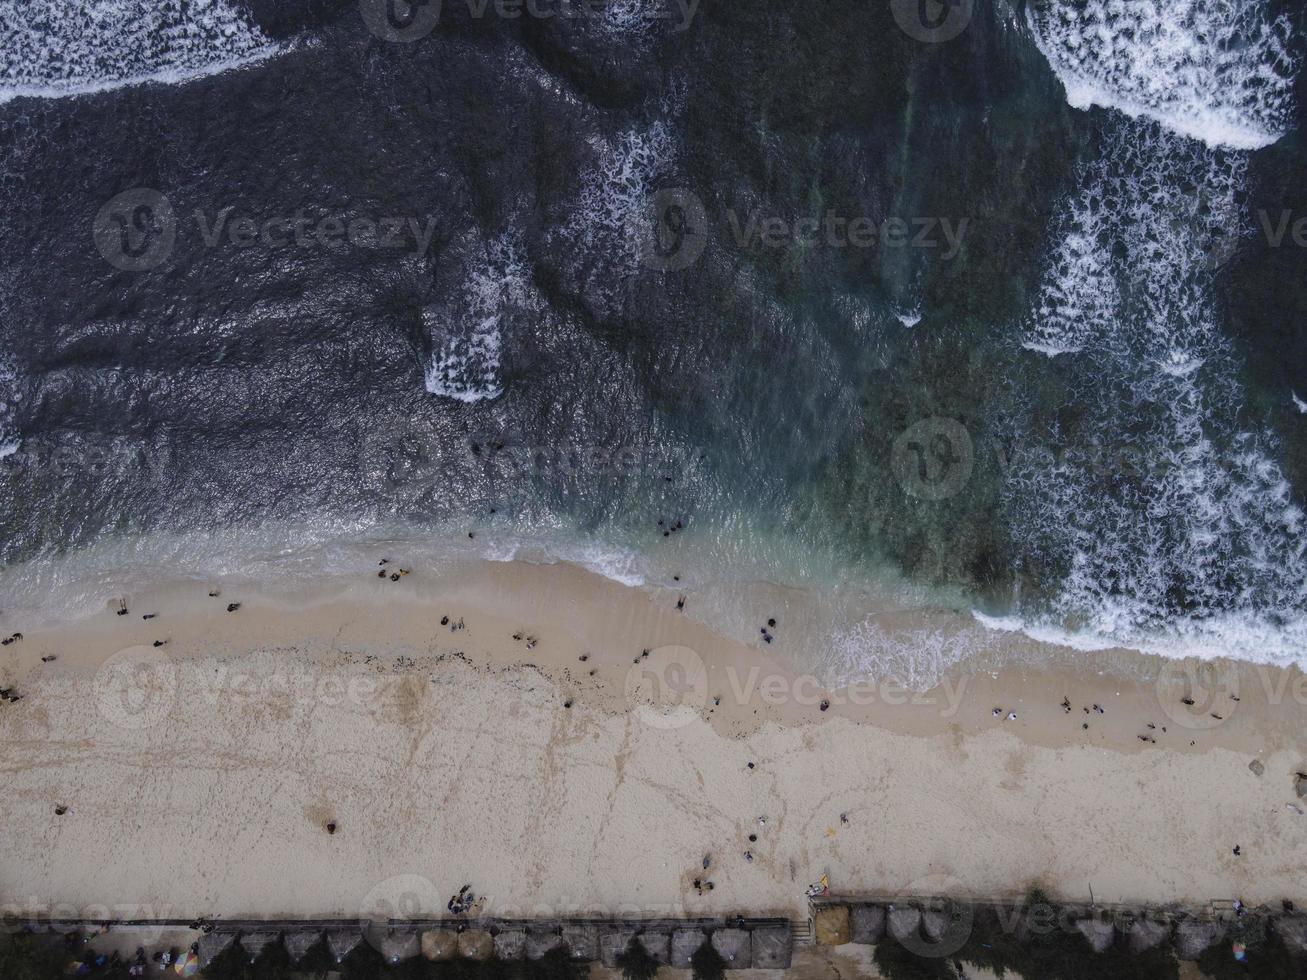 vista aerea del drone della vacanza nella spiaggia di gunung kidul, in indonesia con oceano, barche, spiaggia e persone. foto